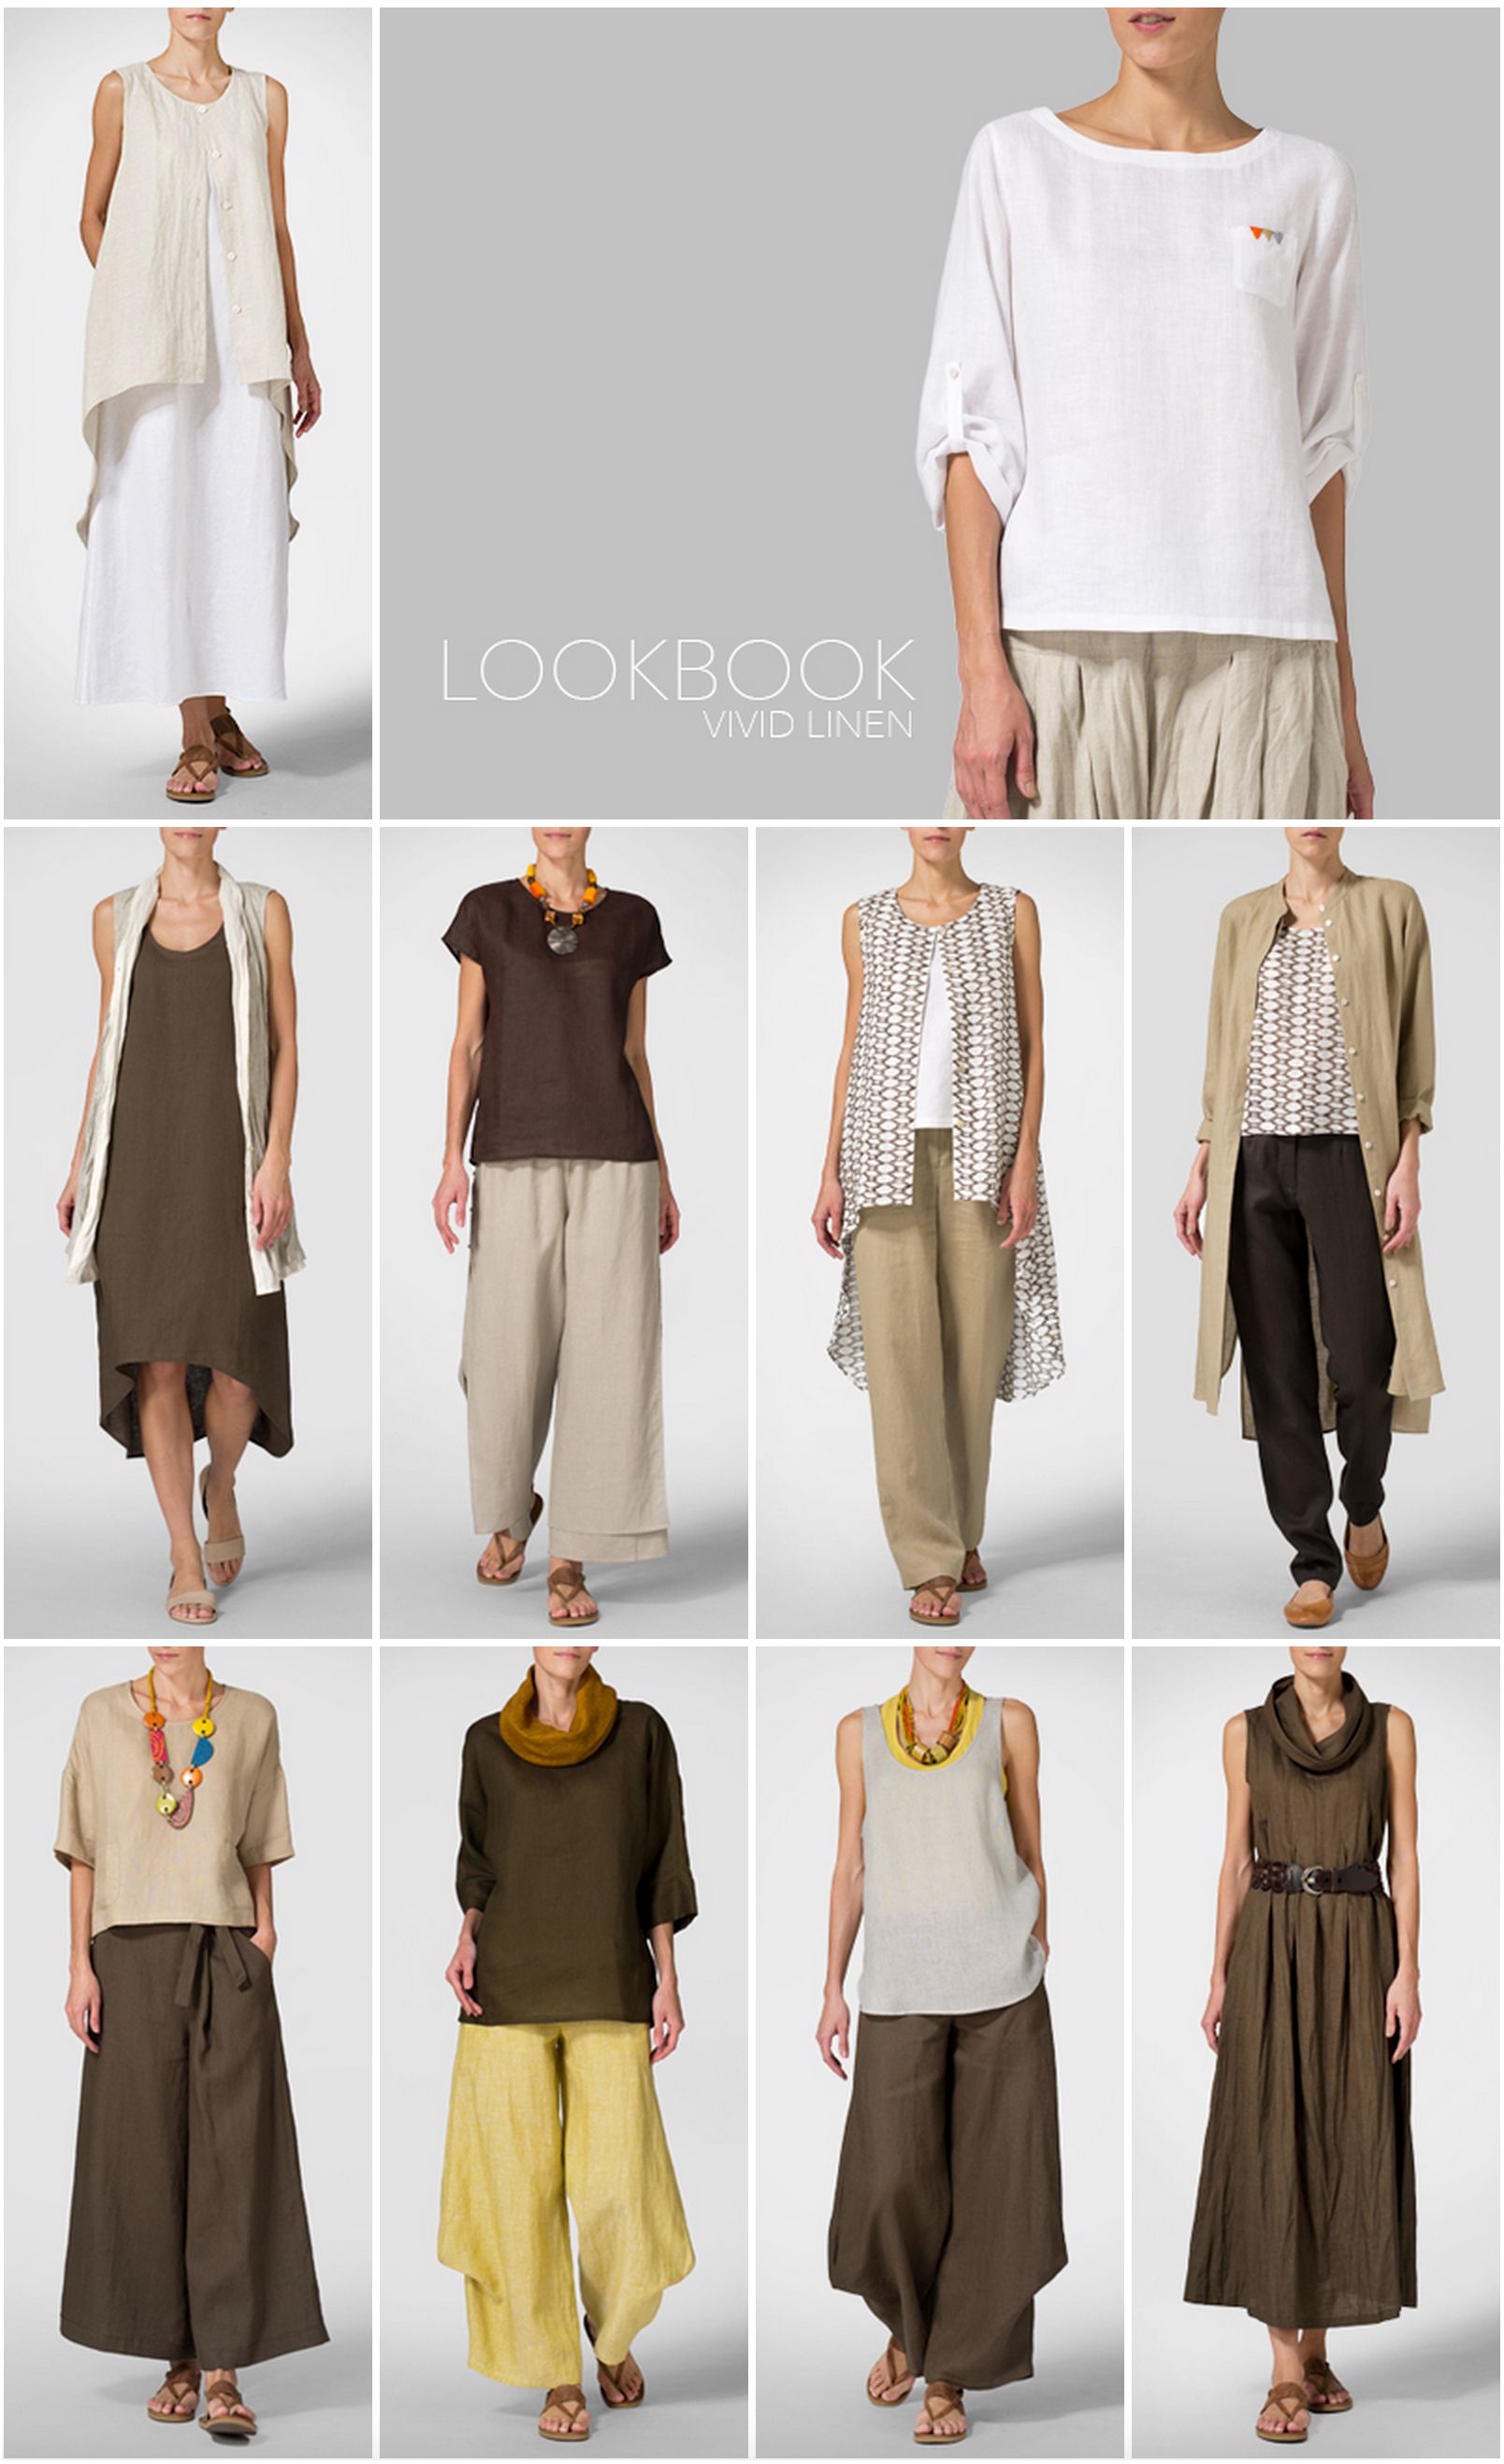 VIVID LINEN clothing - LOOKBOOK